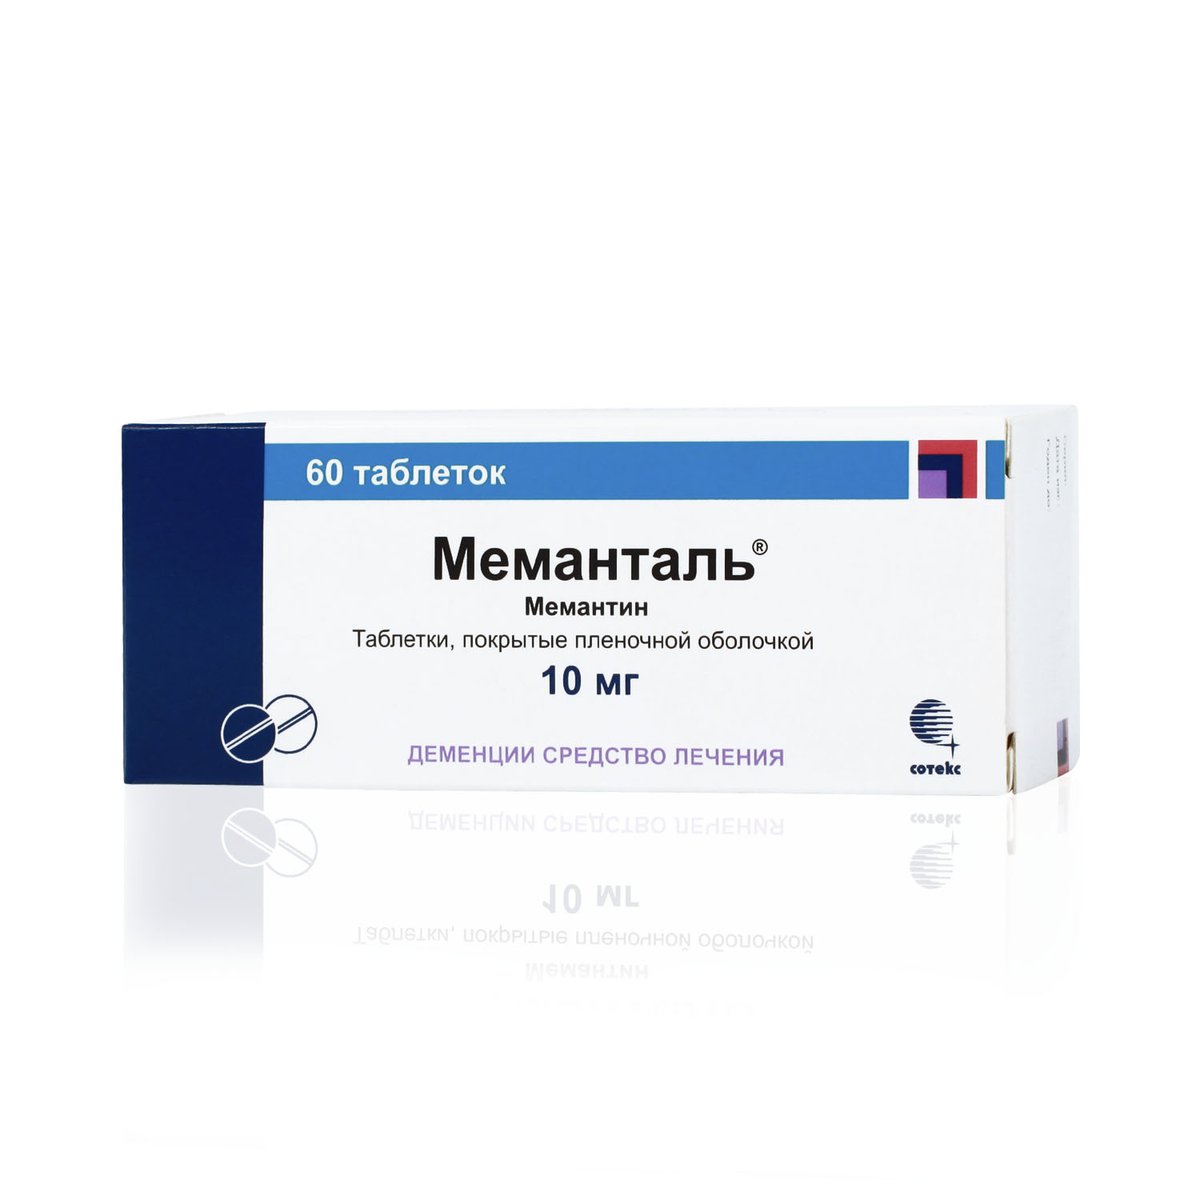 Меманталь (таблетки, 60 шт, 10 мг) - цена,  онлайн  .